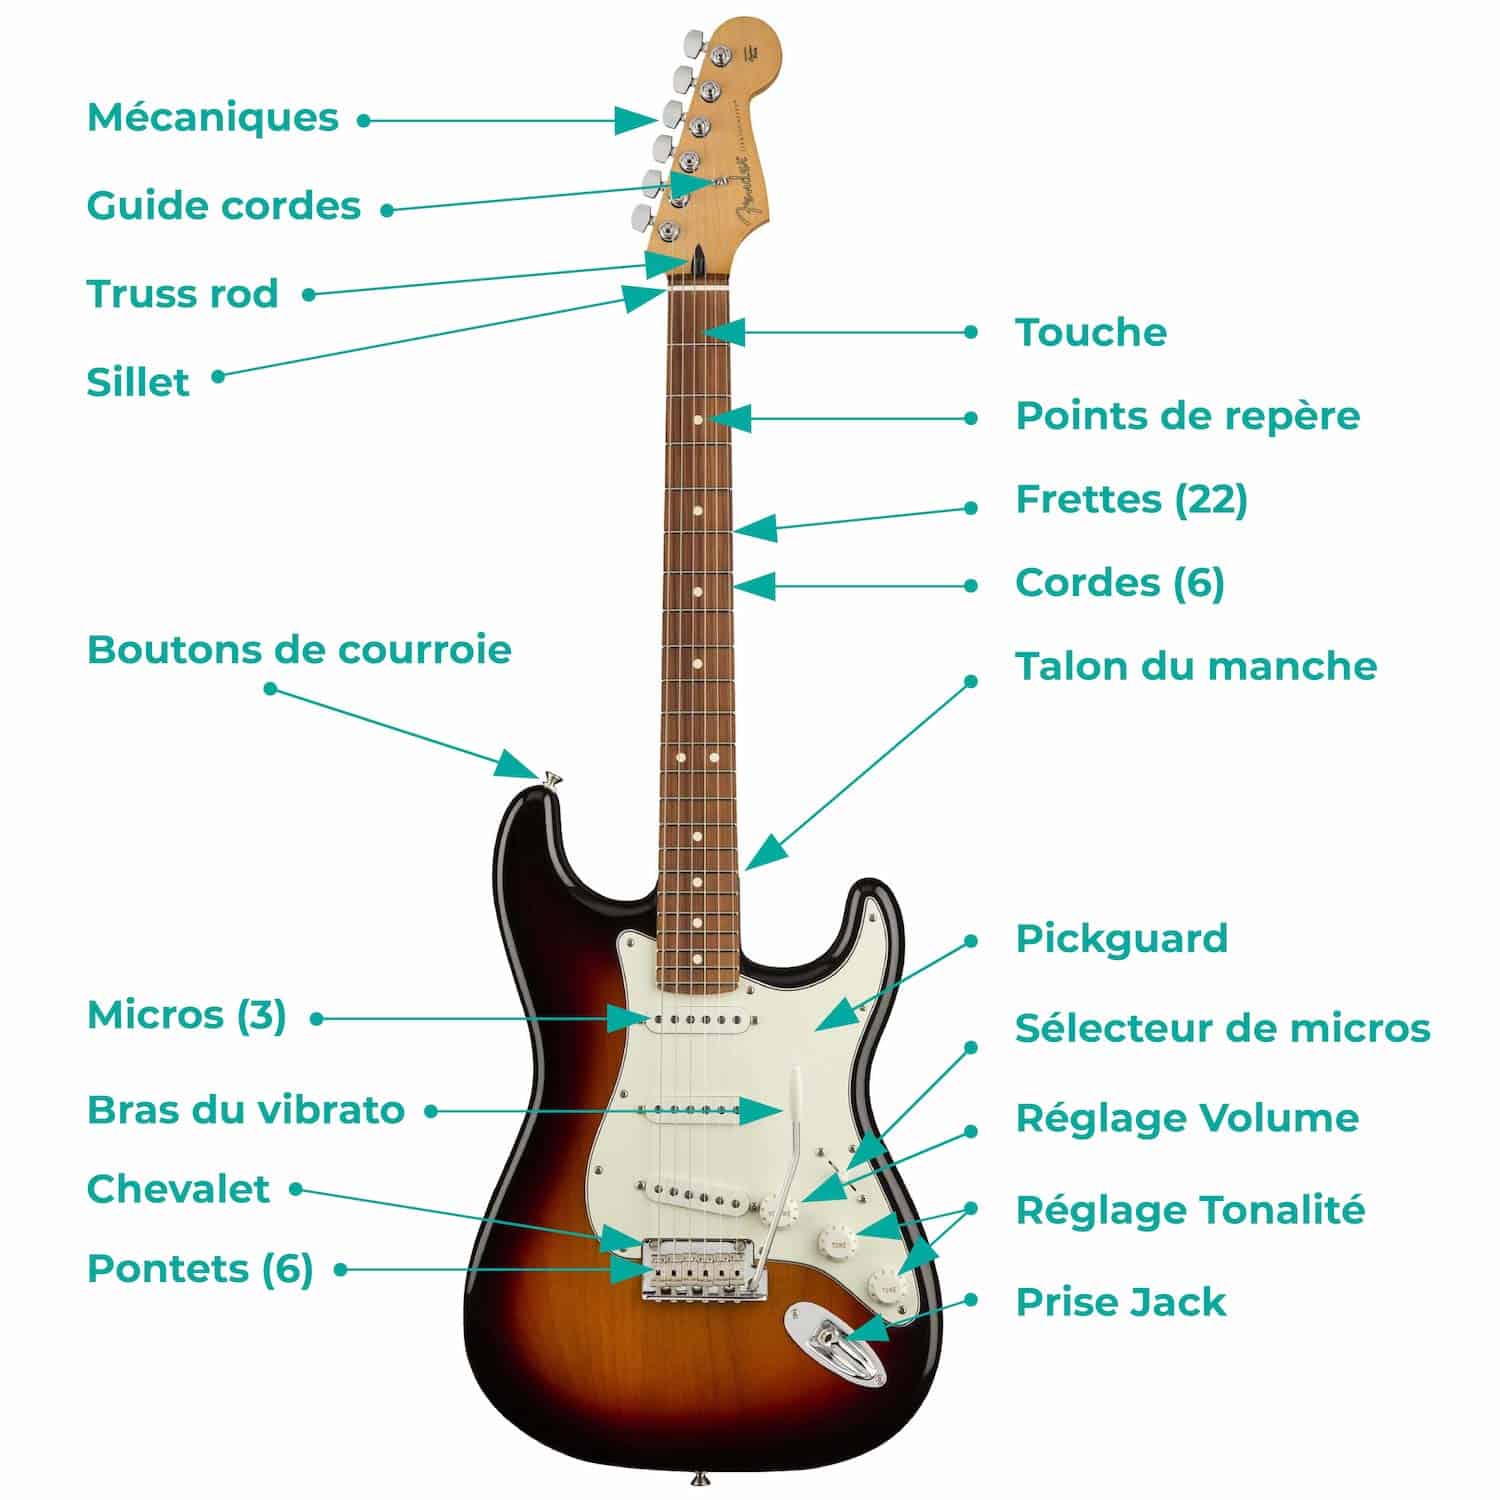 Qu'est-ce que le radius de touche d'une guitare ou d'une basse